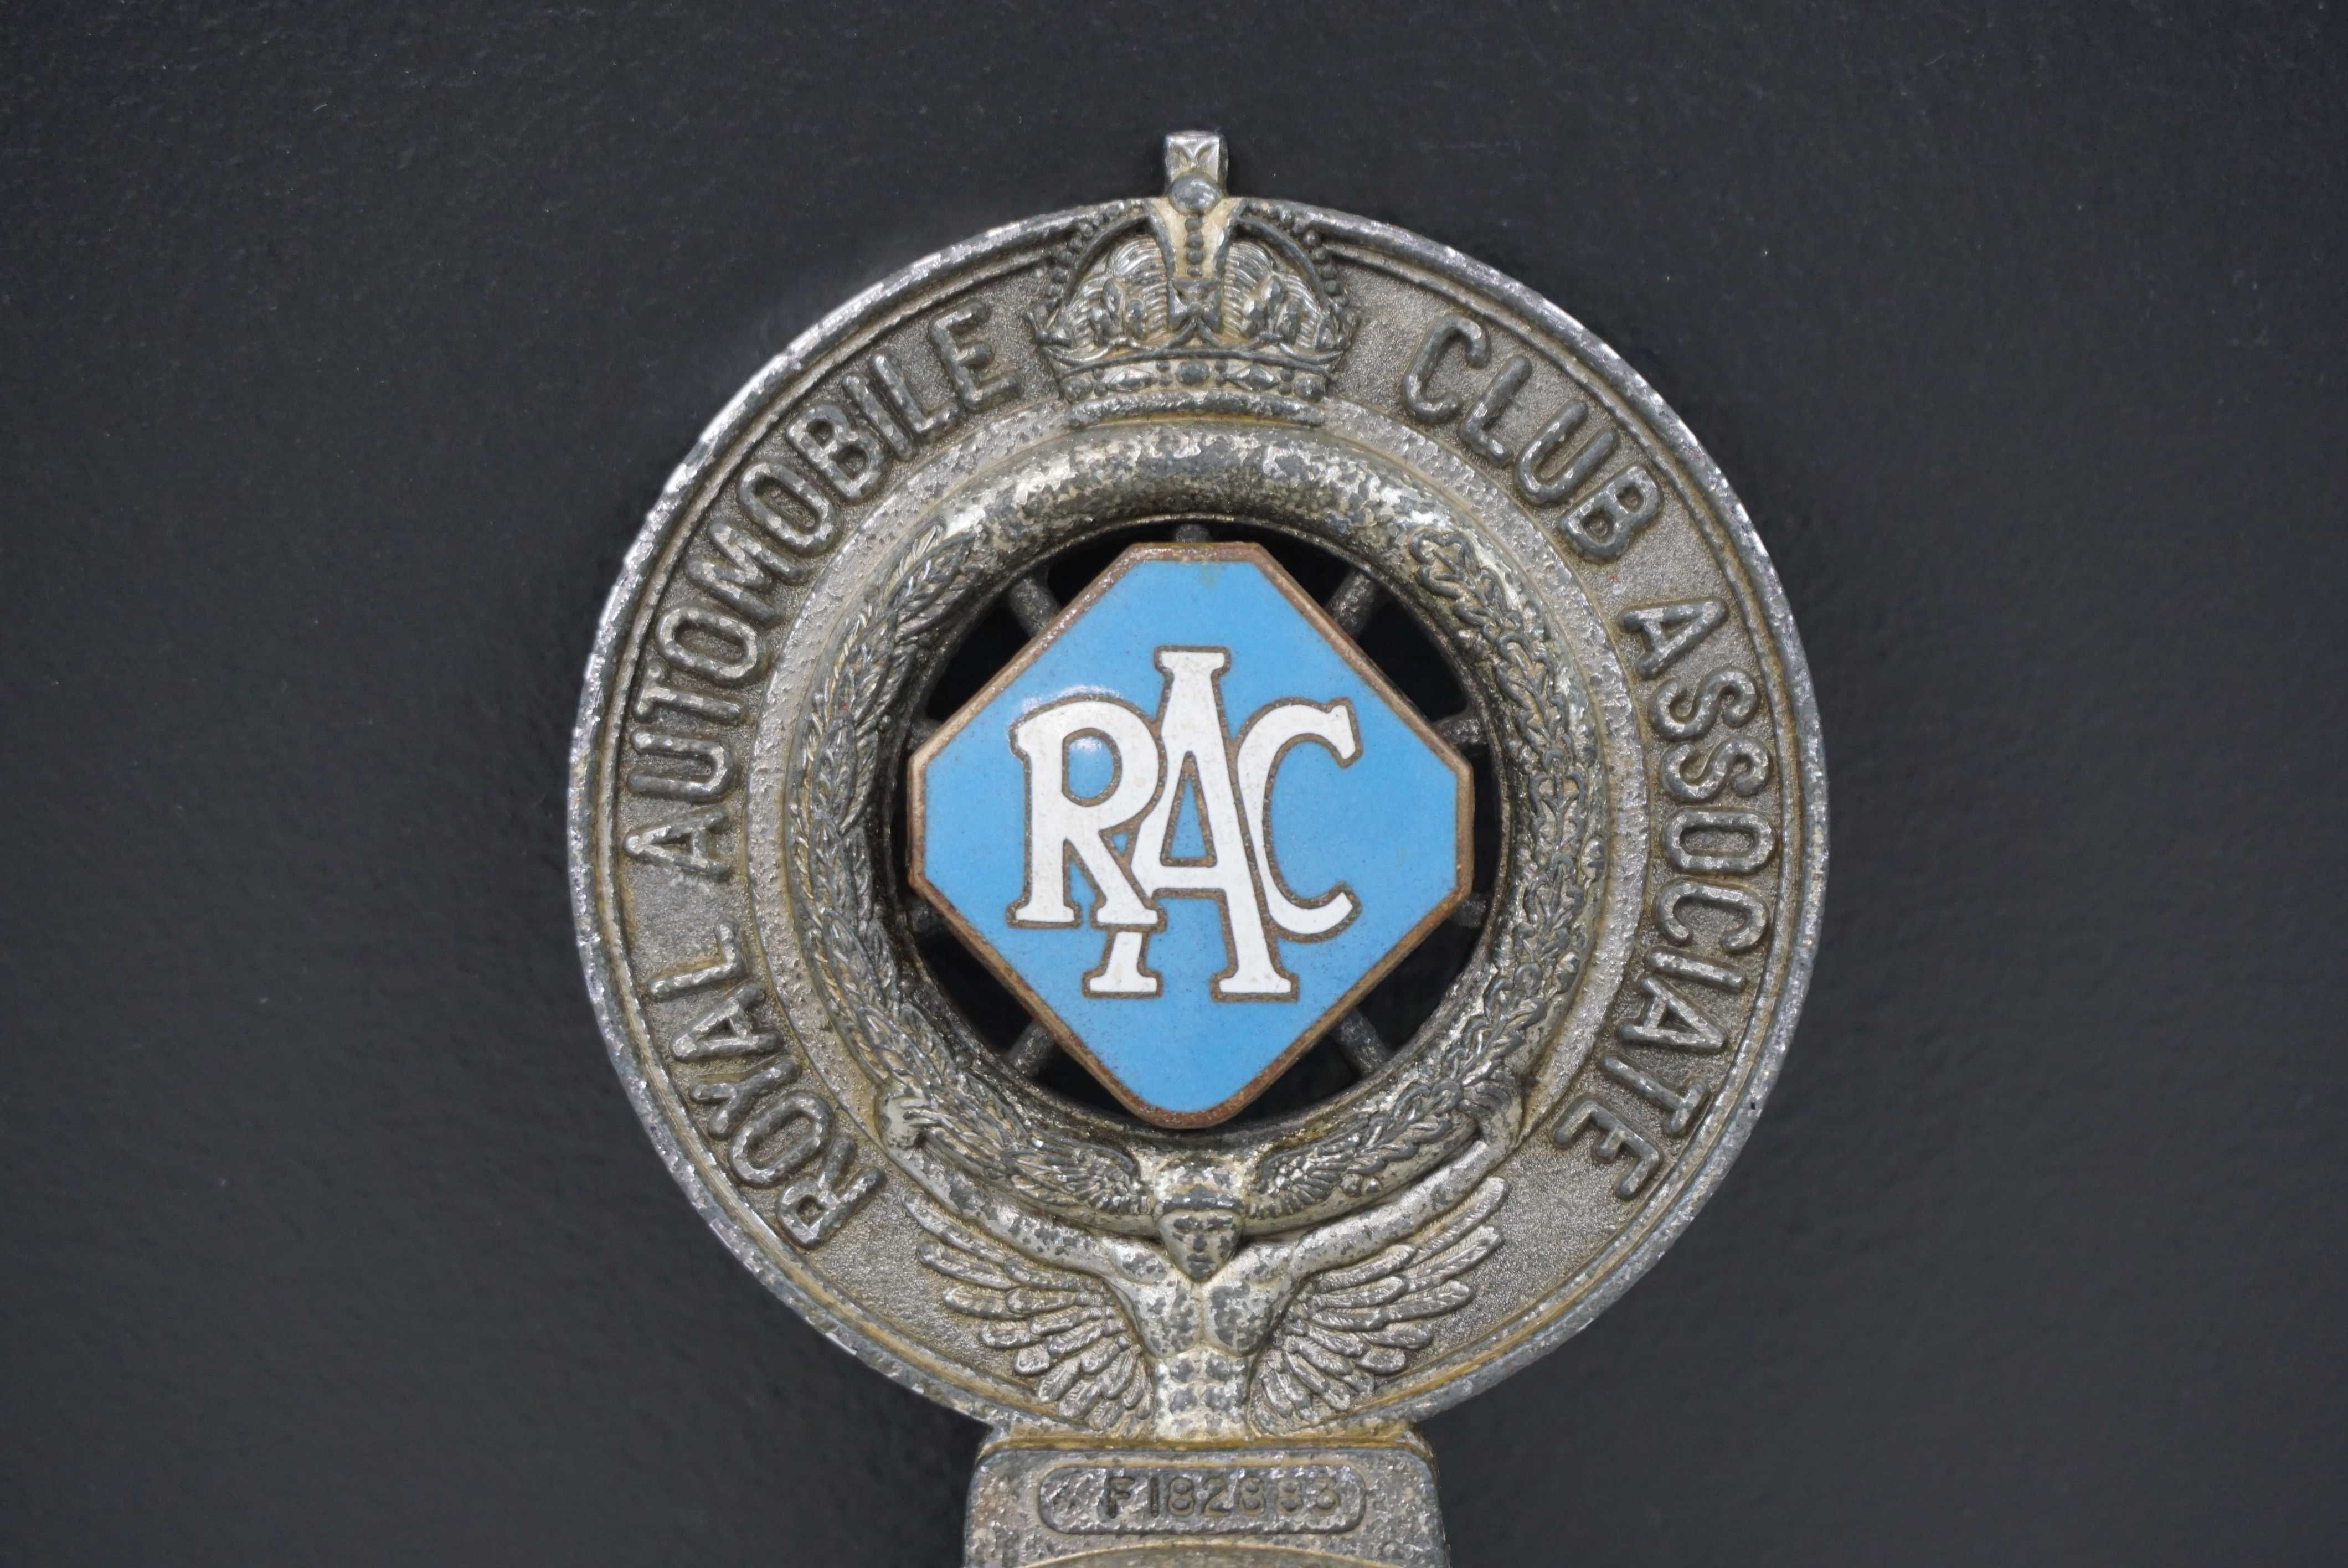 Royal Automobile Club emblemat znaczek lata 30te